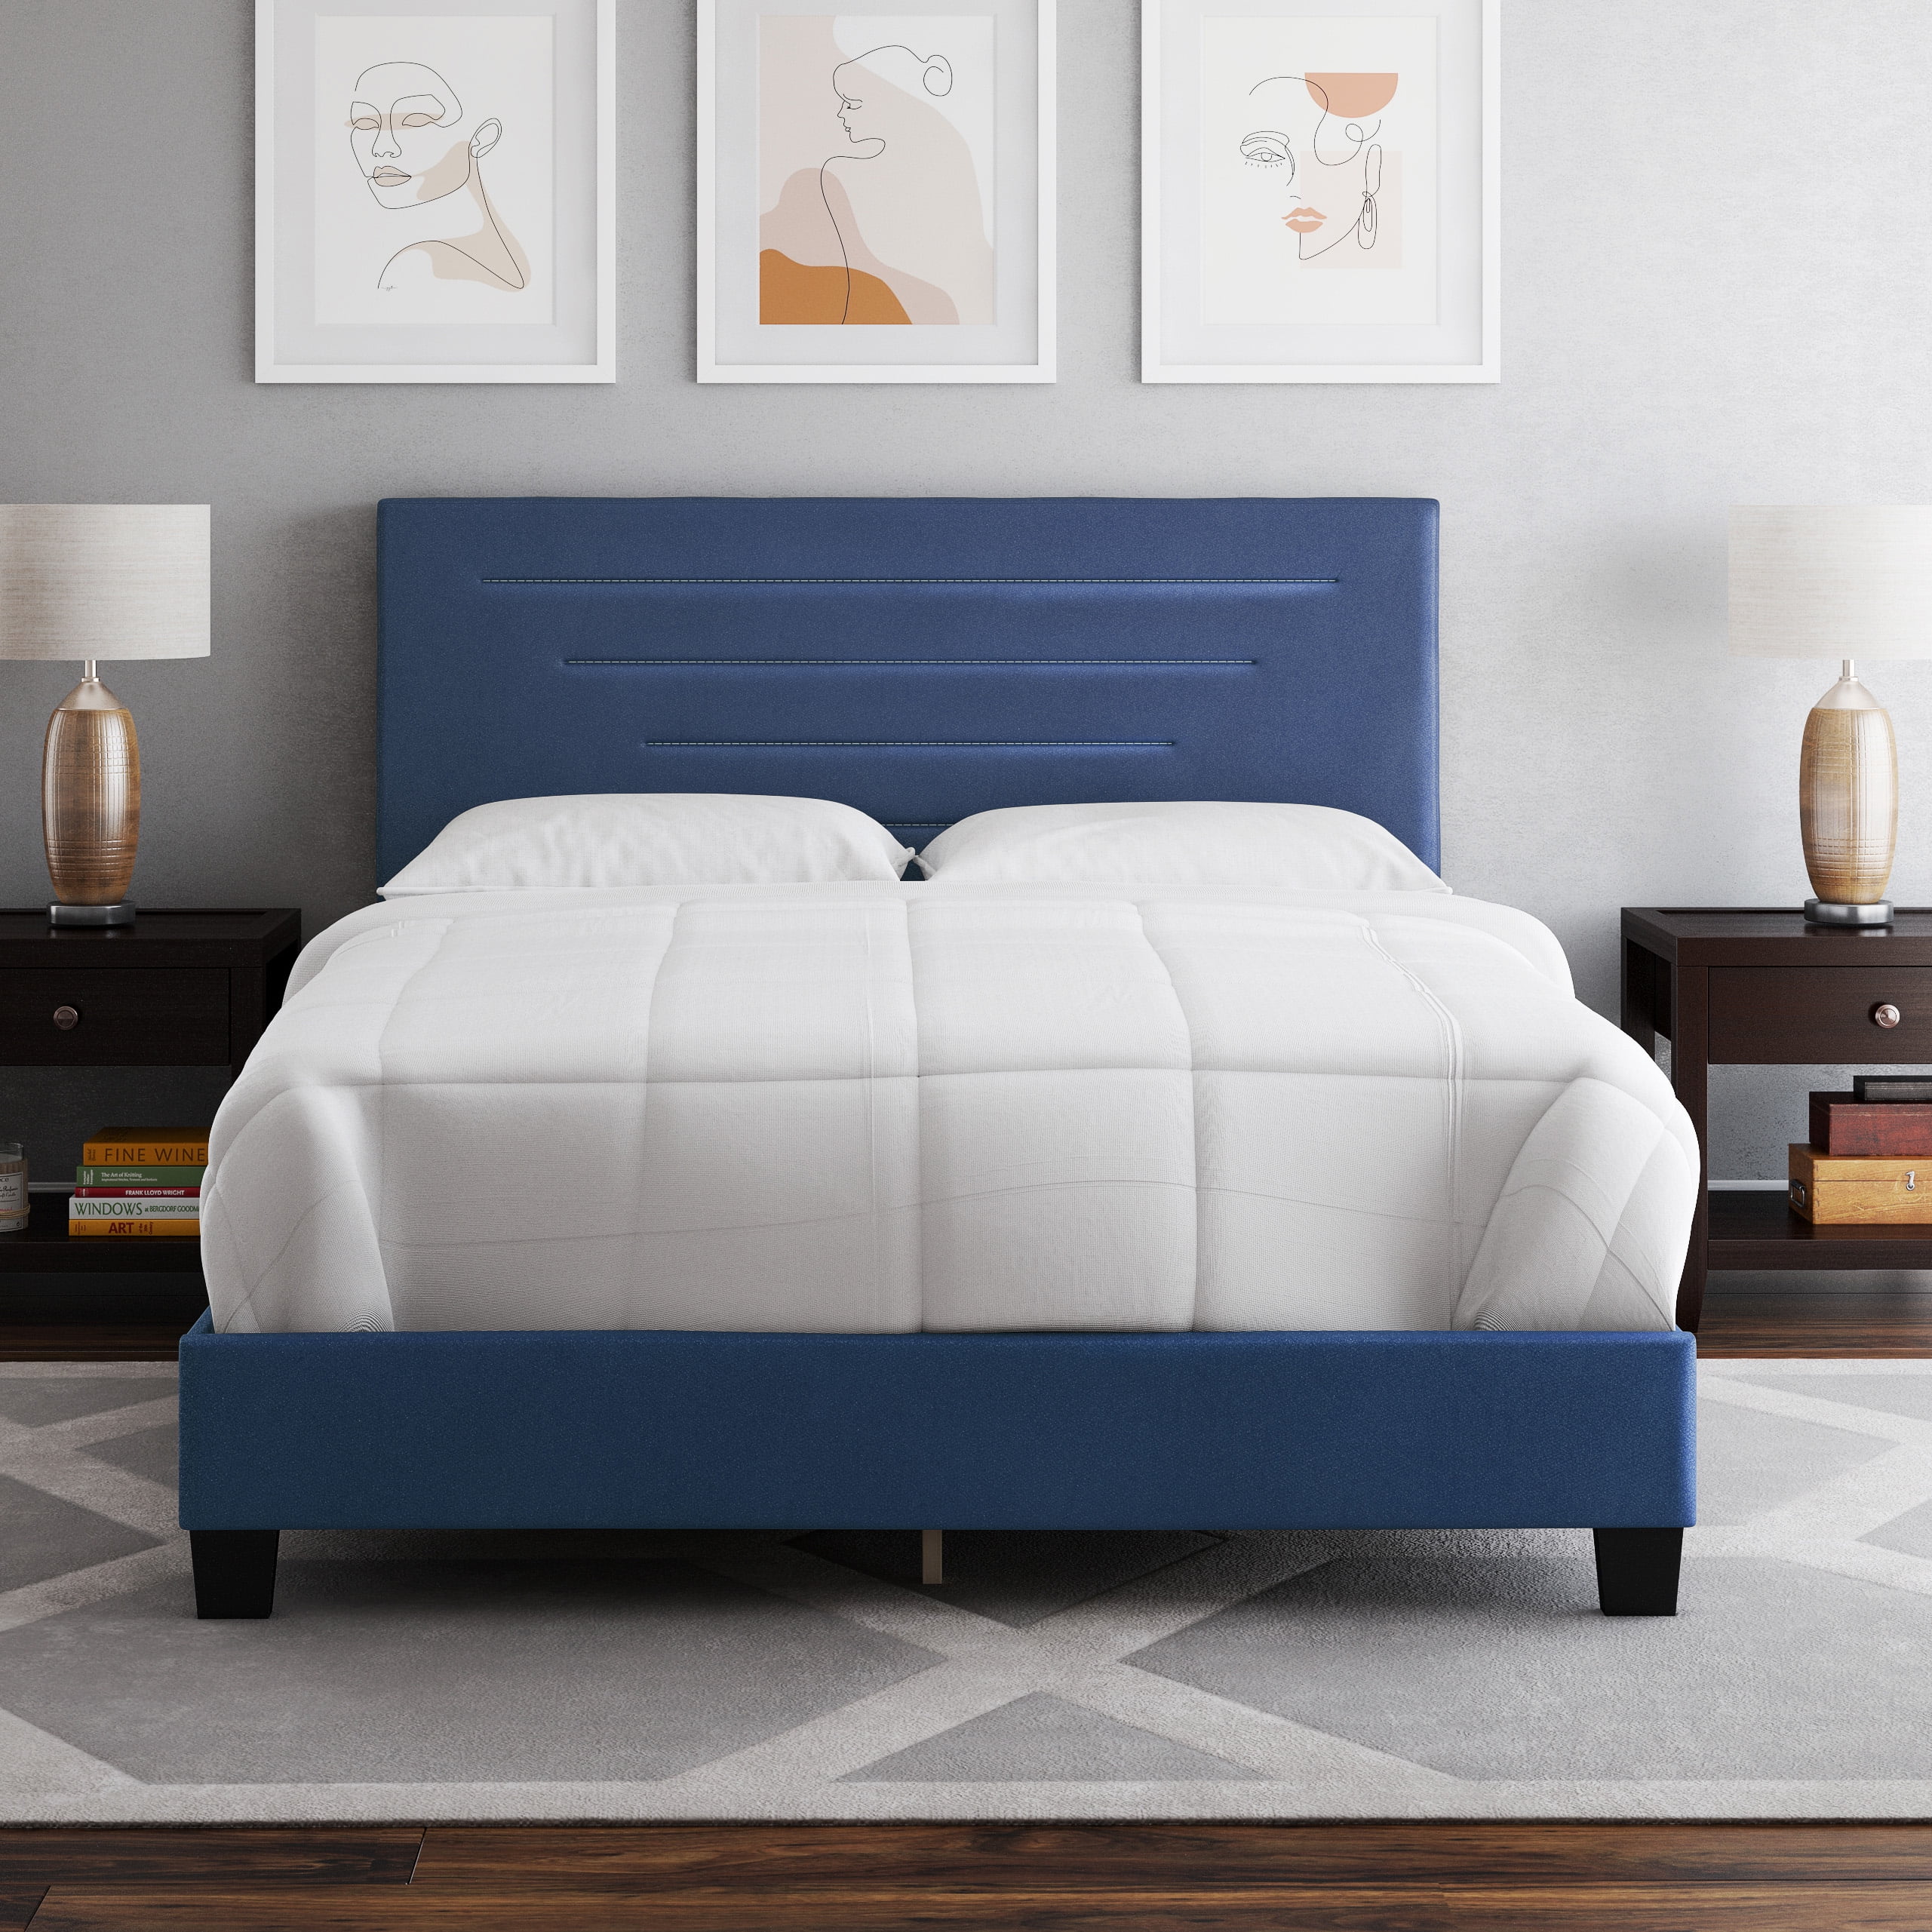 Details about   Bed Frame King Upholstered Platform Navy Wooden Slat Supprt Bedroom Furniture 